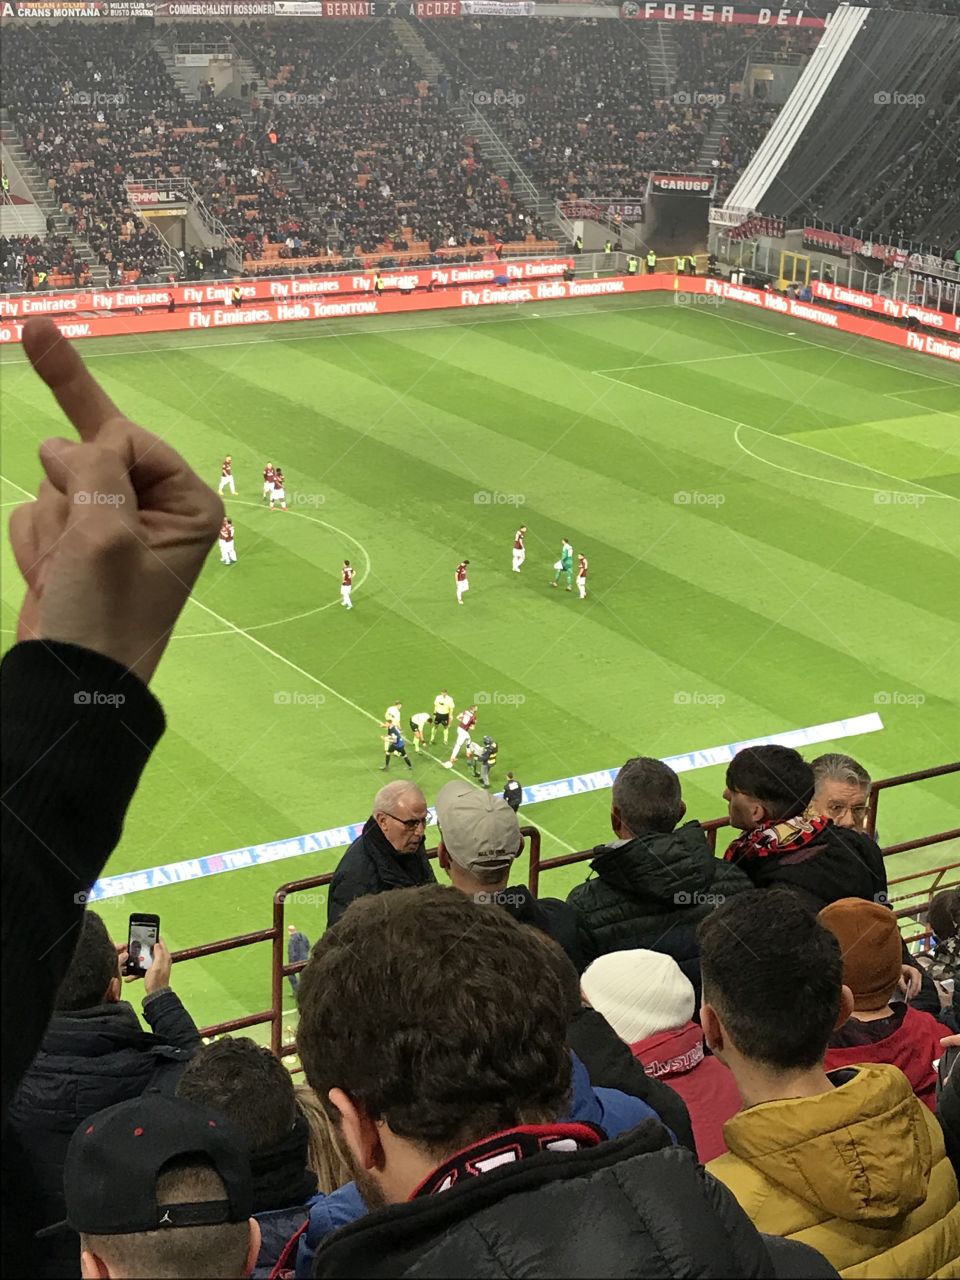 Ein Bild, das die Feidschaft zwischen Inter Mailand und AC Mailand Fans zeigt. Der Finger gehört einer Inter-Anhängerin und zeigt in Richtung Milanblock.